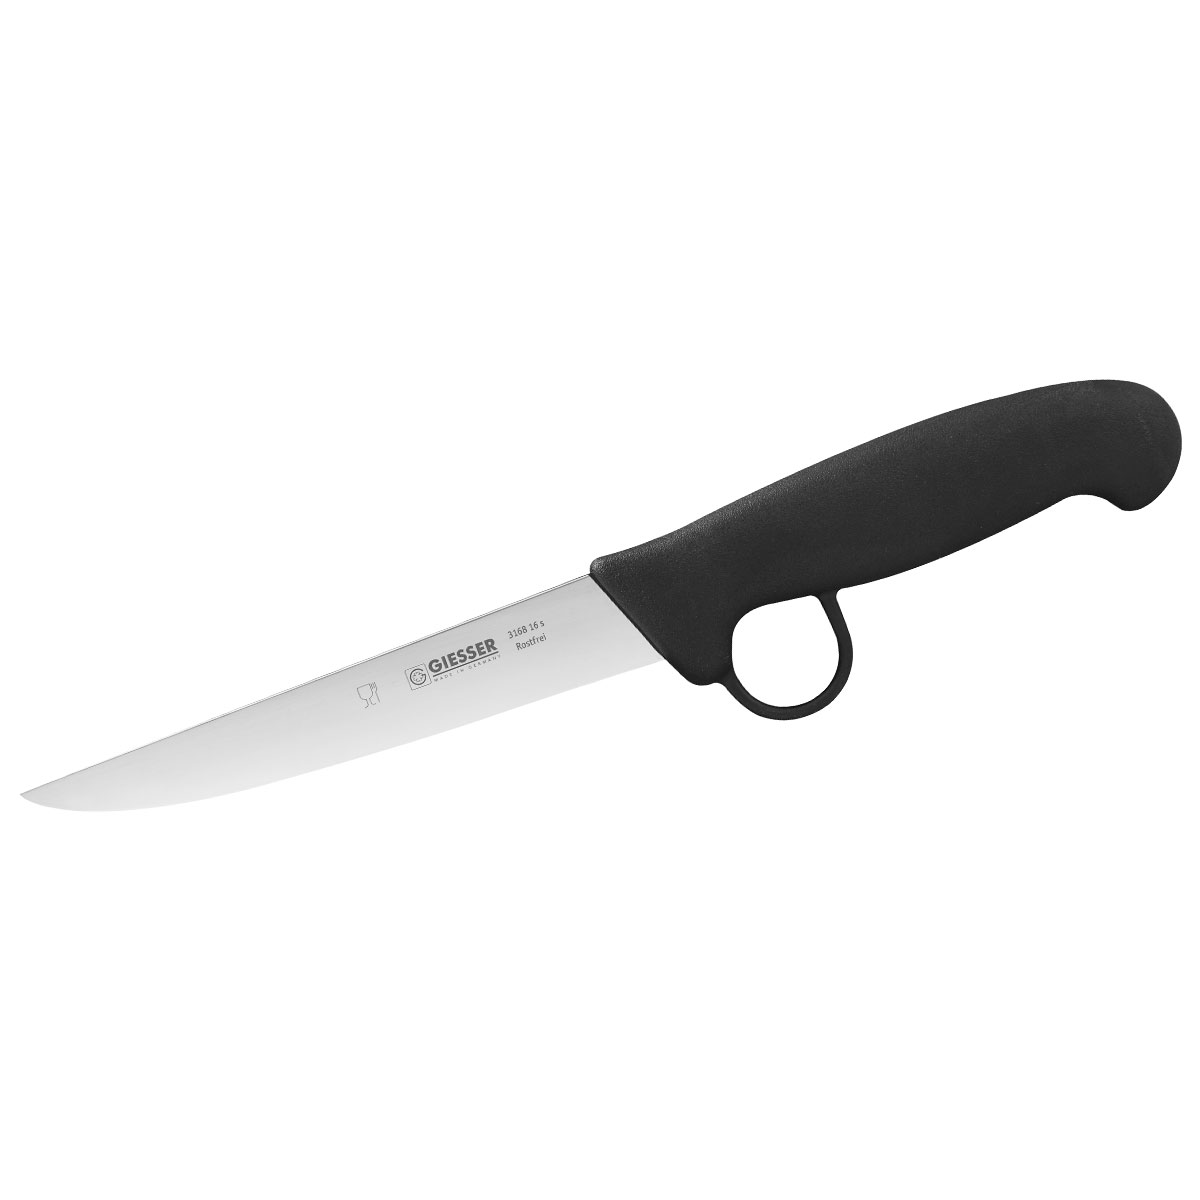 Giesser Boning Knife, 16cm (6) - Wide Blade, Bodyguard - Black